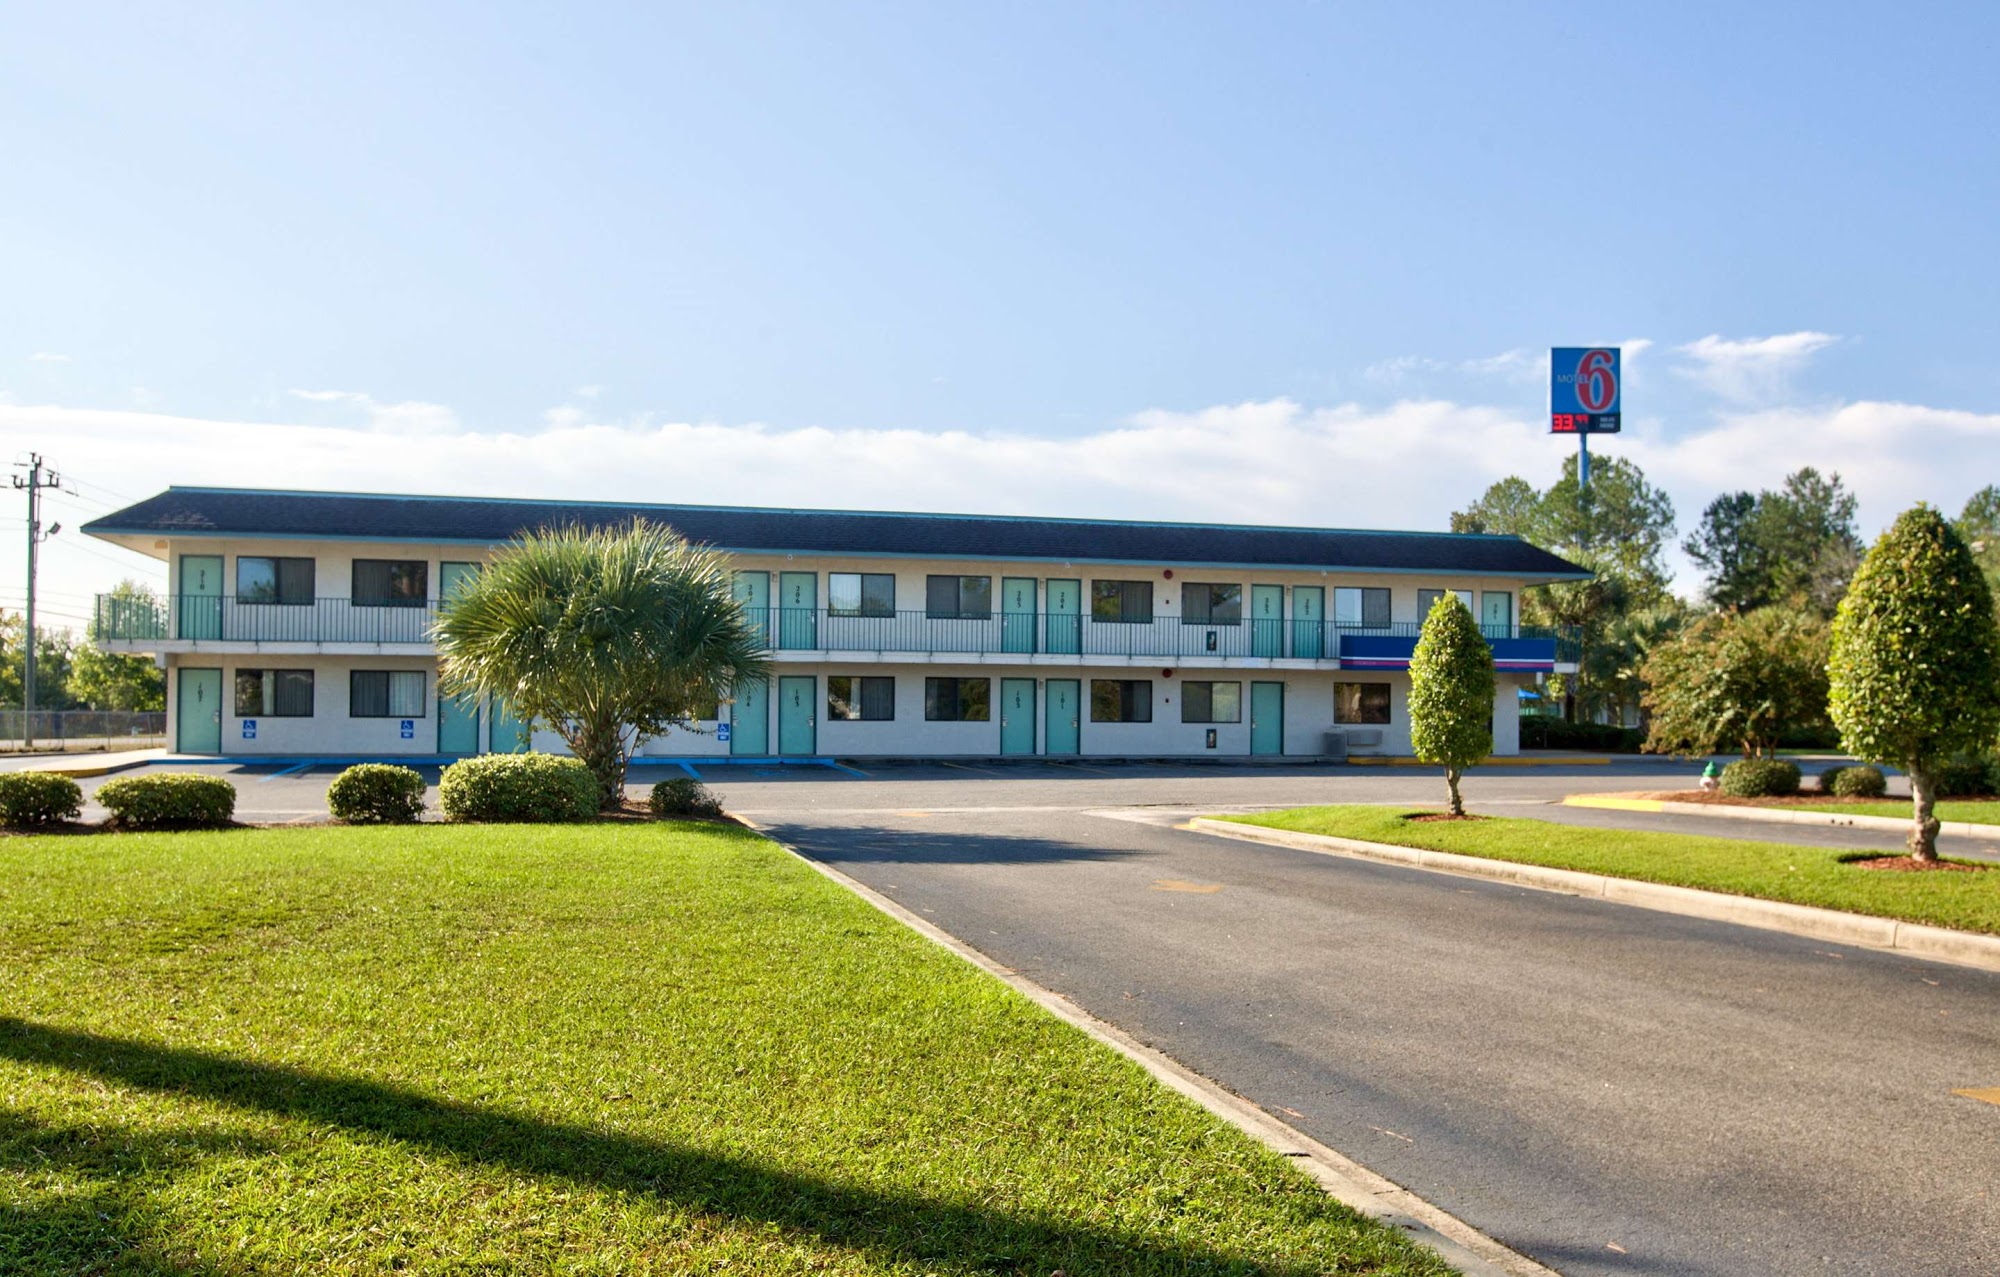 Motel 6 Valdosta, GA - University